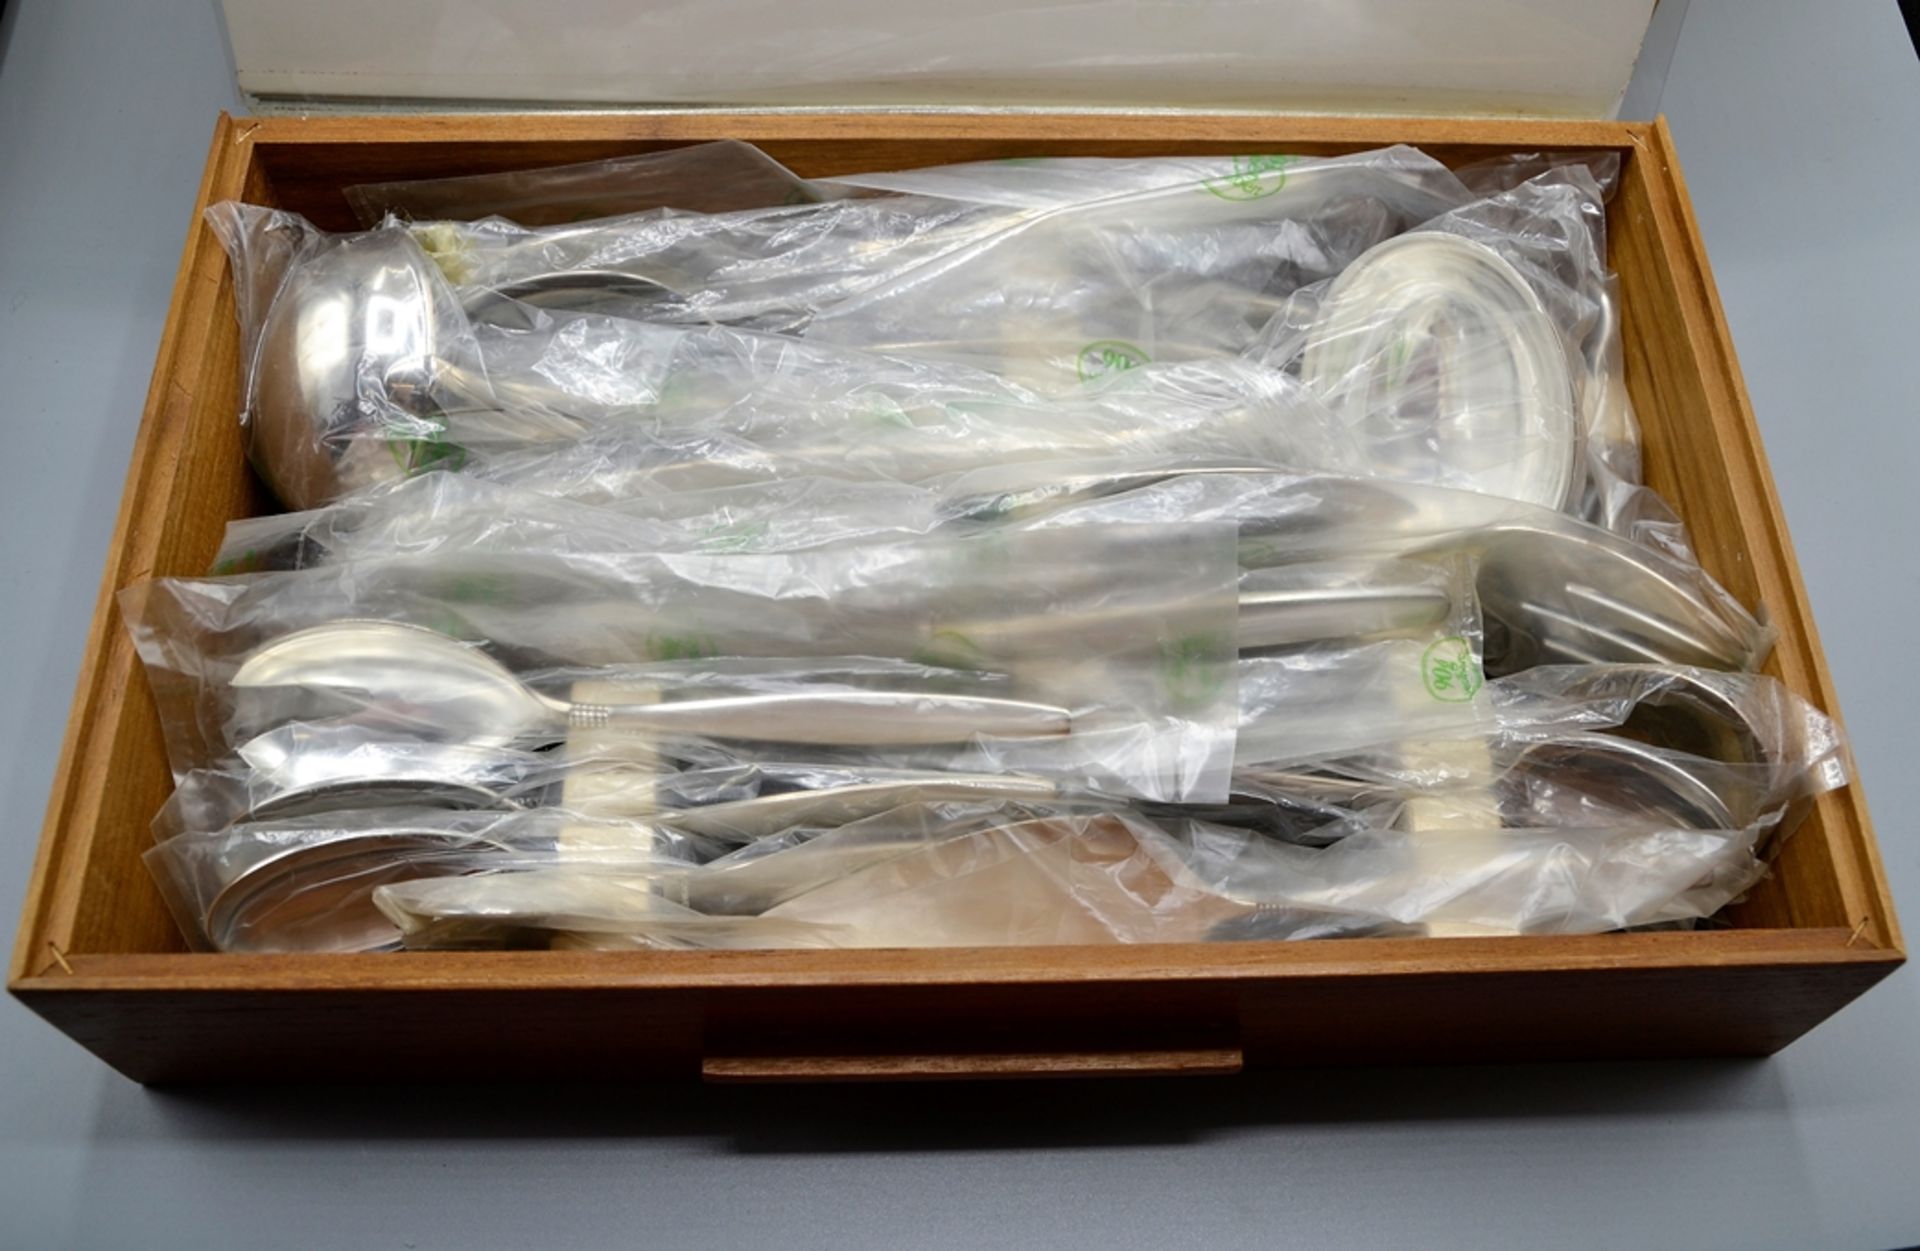 BSF 90 Dänisch Perl Besteck ca. 100 Teile, unbenutzt und noch in Folie, mit Besteckkasten - Image 2 of 6